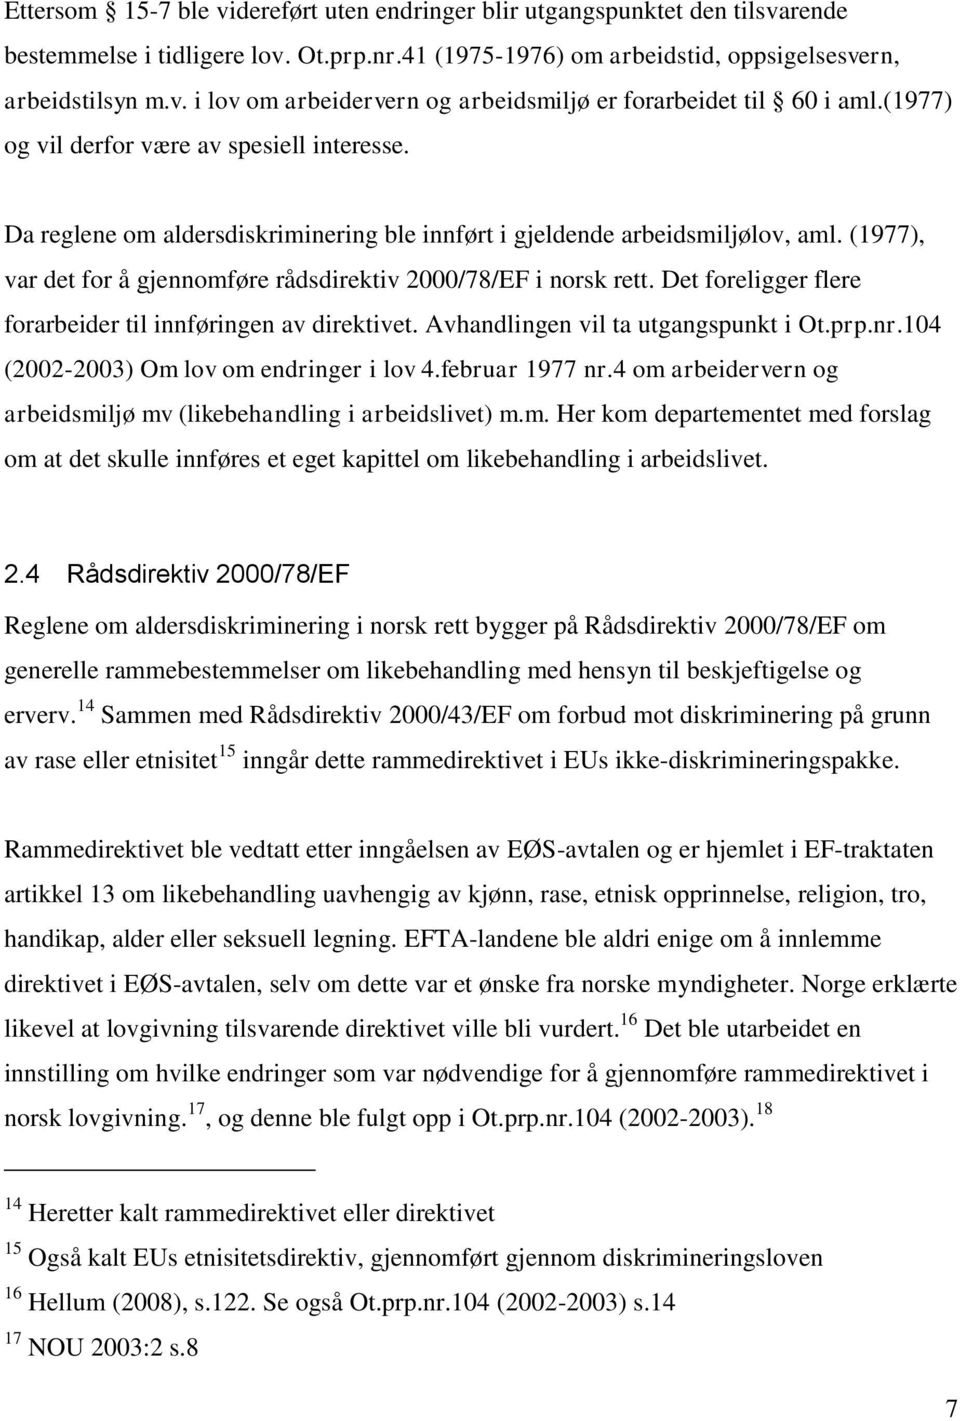 (1977), var det for å gjennomføre rådsdirektiv 2000/78/EF i norsk rett. Det foreligger flere forarbeider til innføringen av direktivet. Avhandlingen vil ta utgangspunkt i Ot.prp.nr.